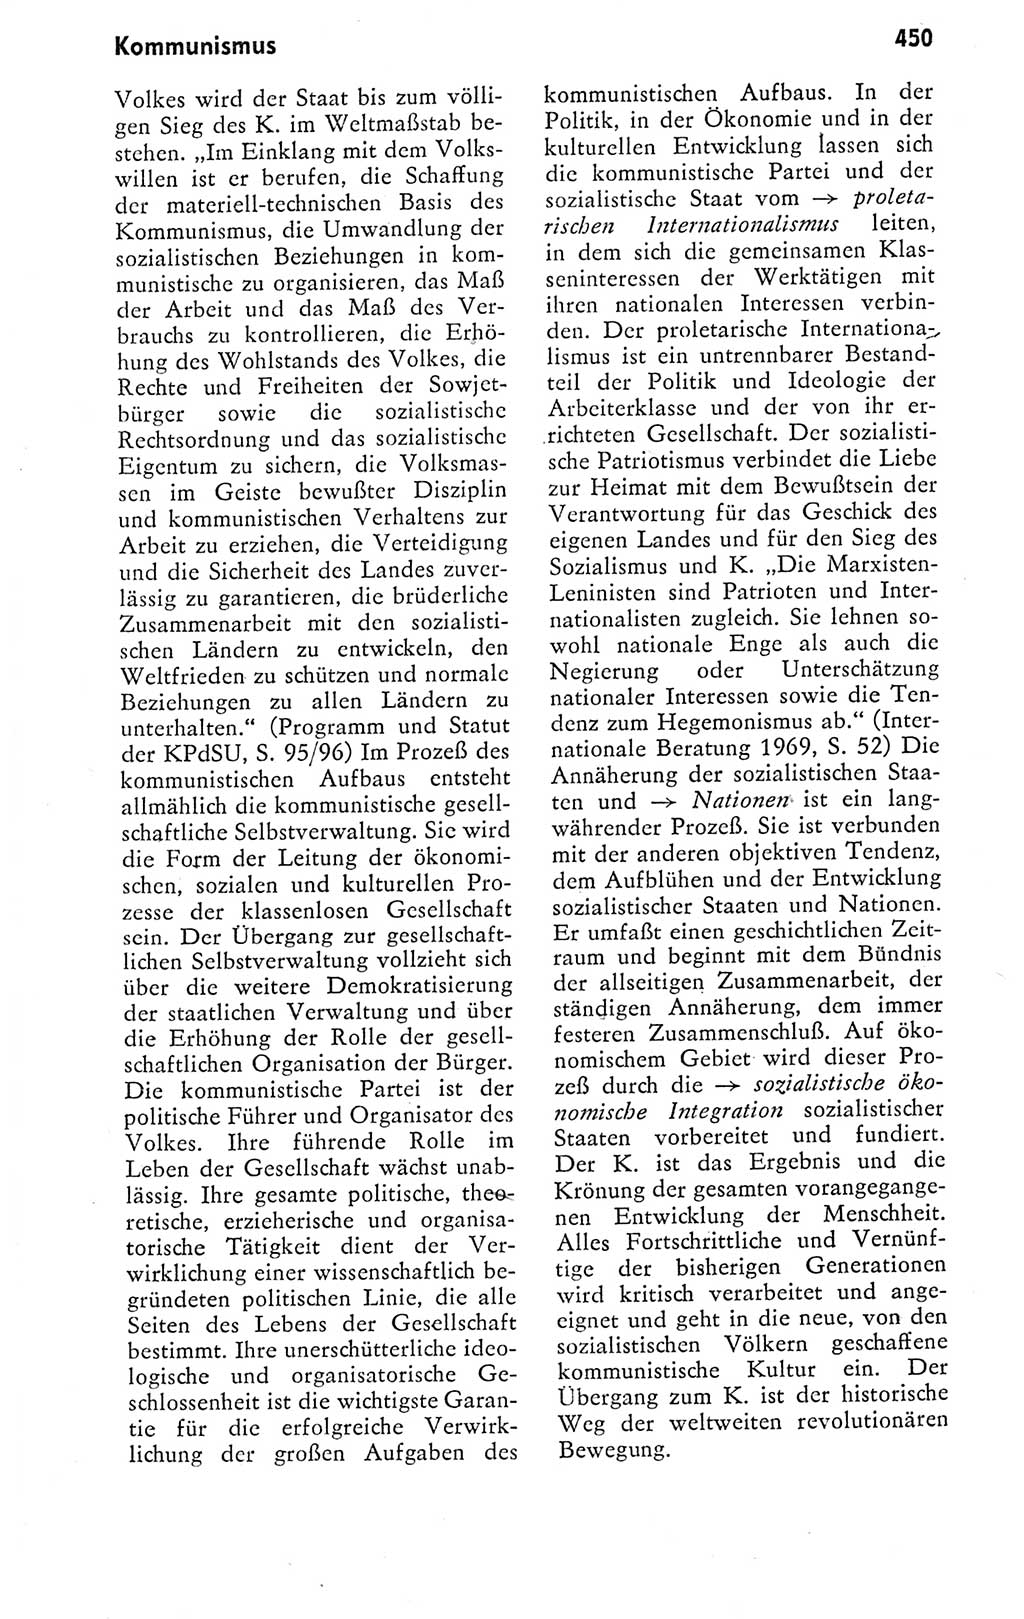 Kleines politisches Wörterbuch [Deutsche Demokratische Republik (DDR)] 1978, Seite 450 (Kl. pol. Wb. DDR 1978, S. 450)